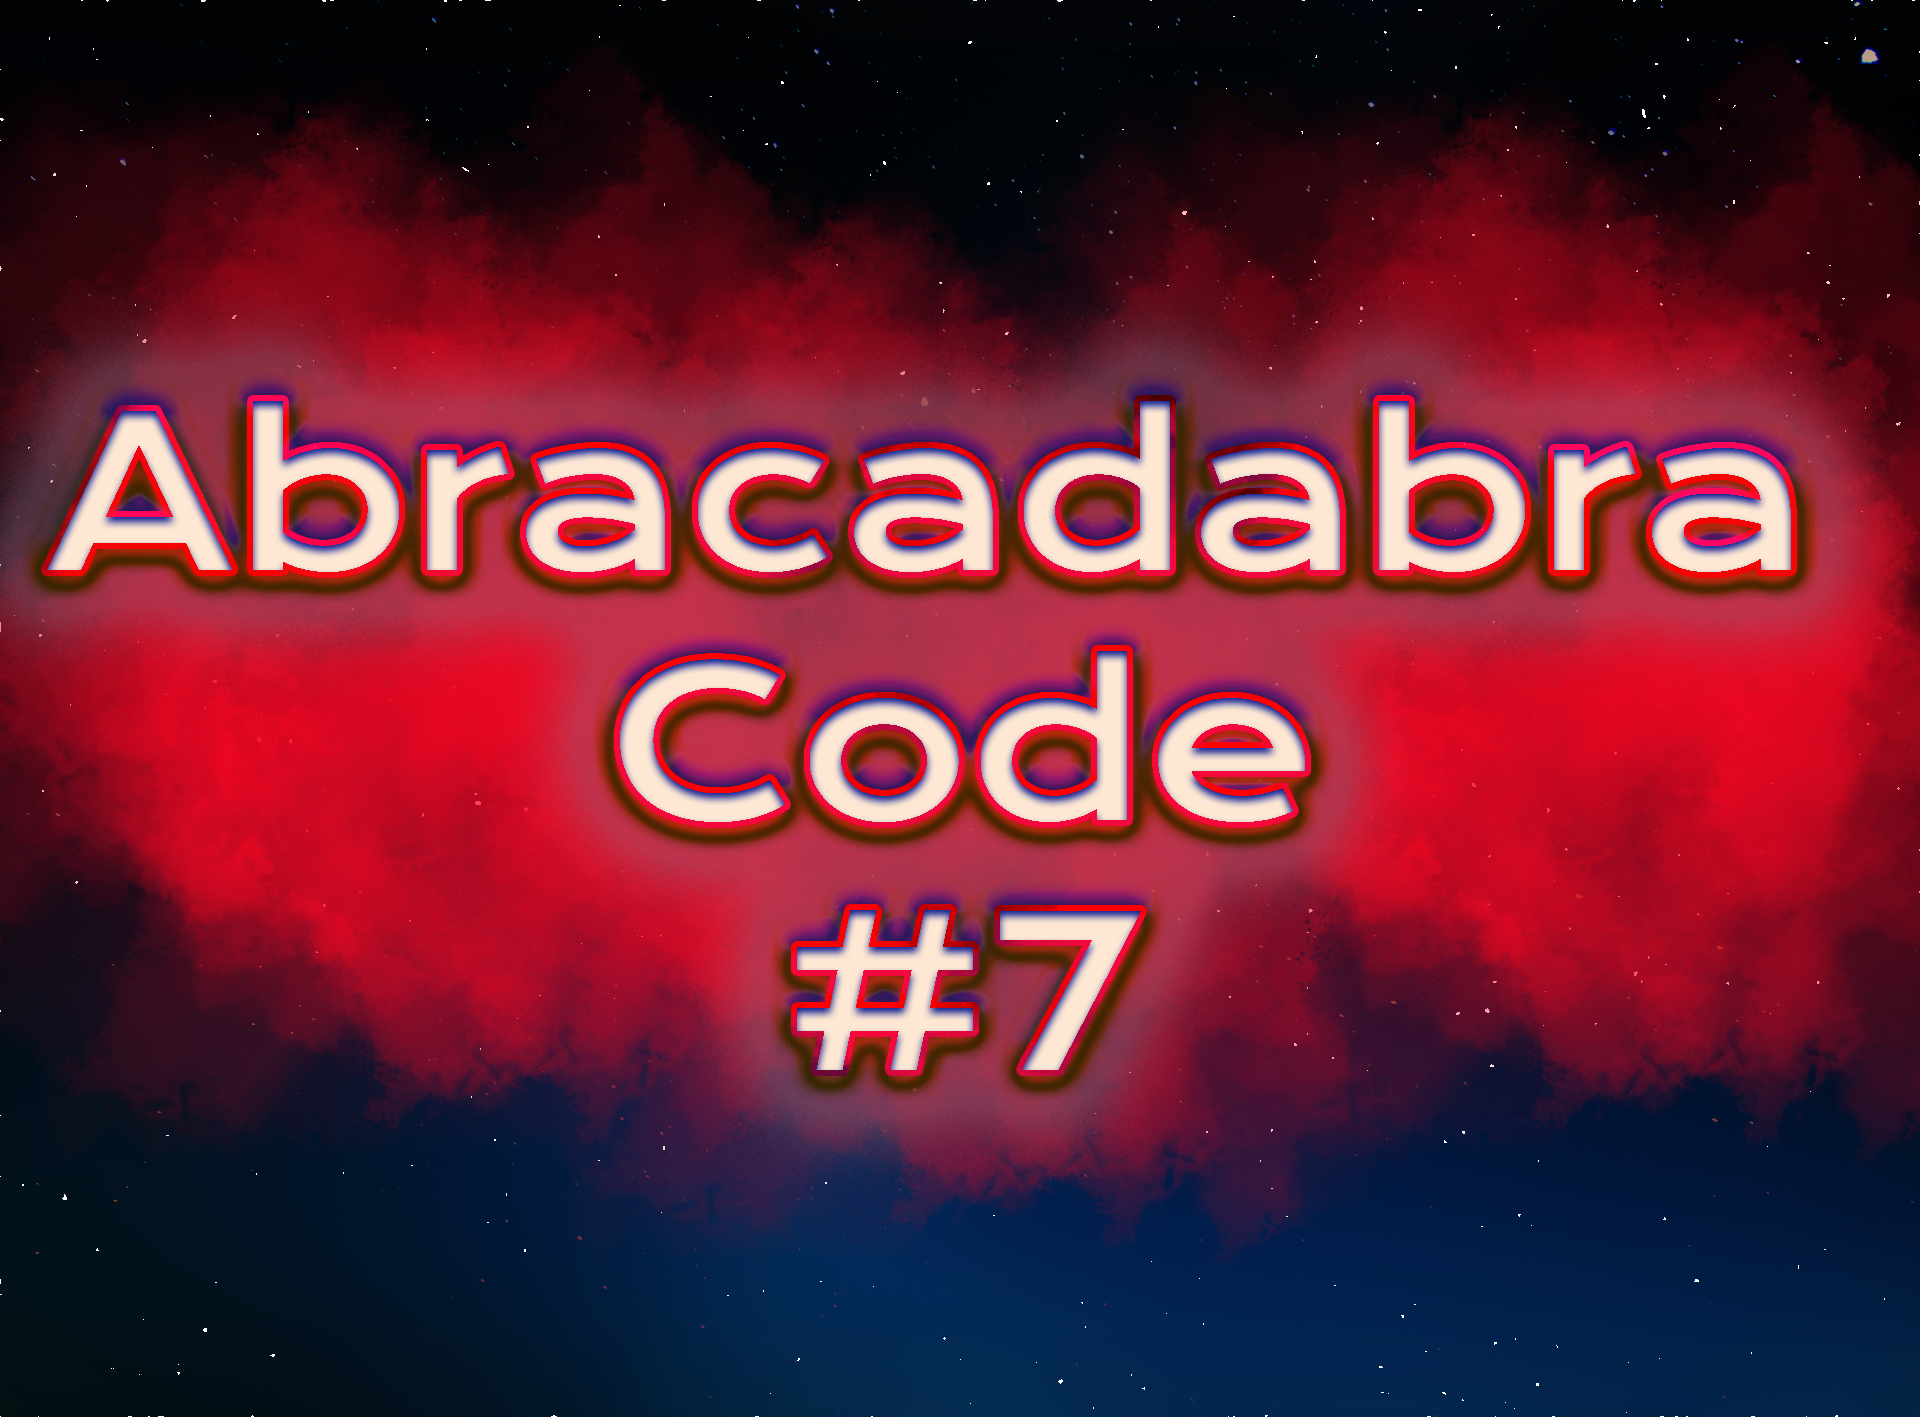 Abracadabra Code #7 chit chat re demanifestation + Clock update with cabin crew